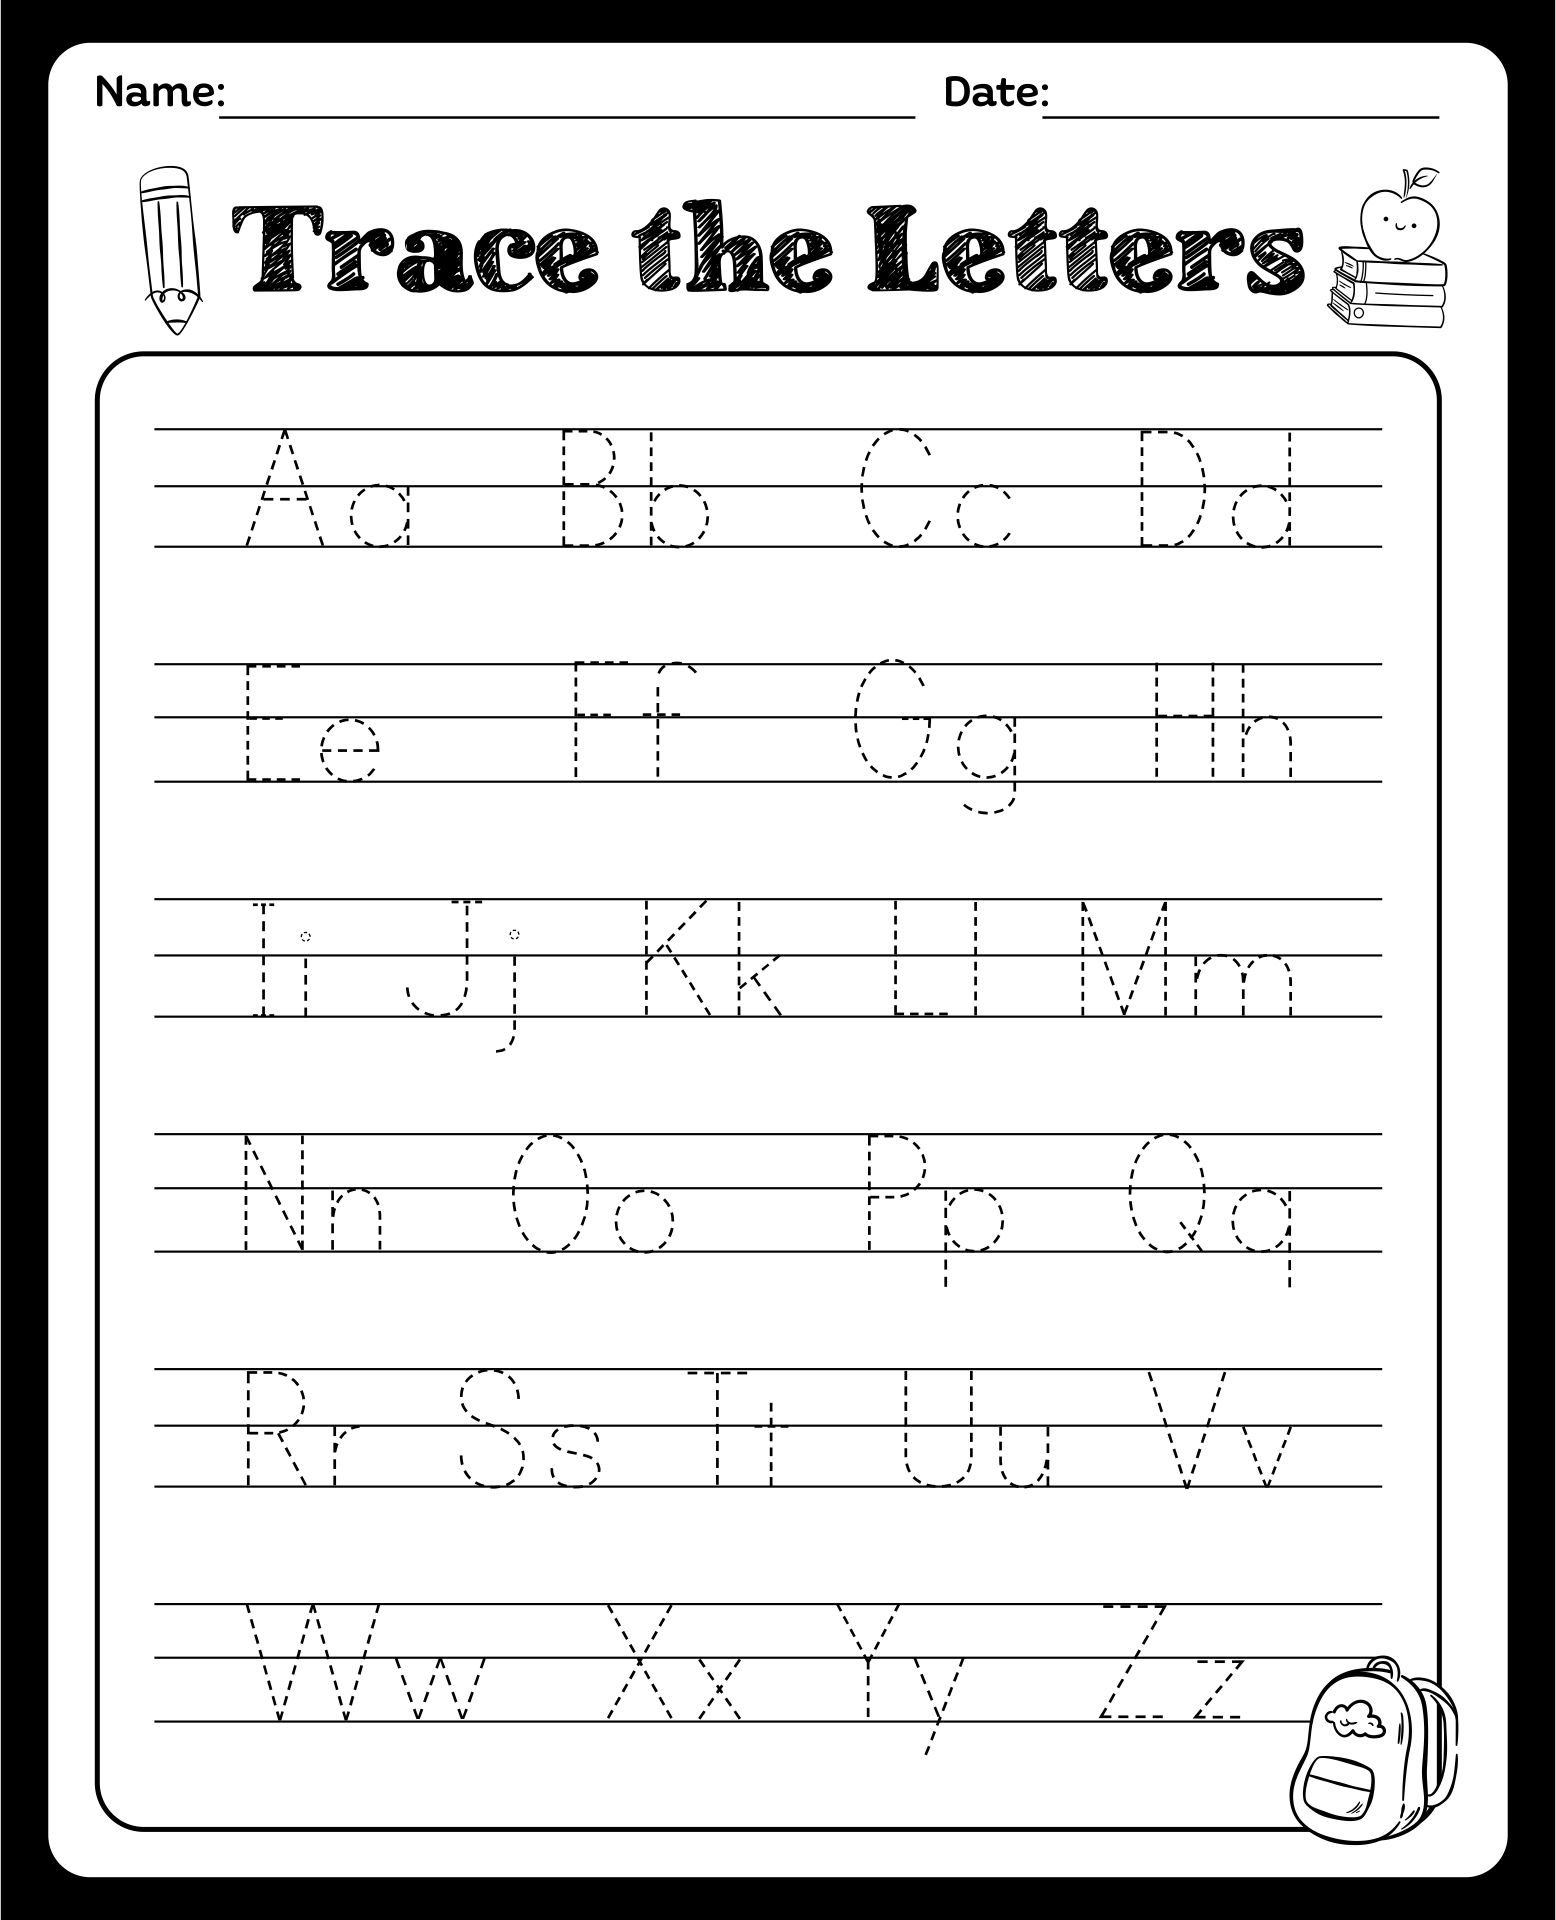 9 Best Images of Free Printable Alphabet Worksheets Kindergarten ...